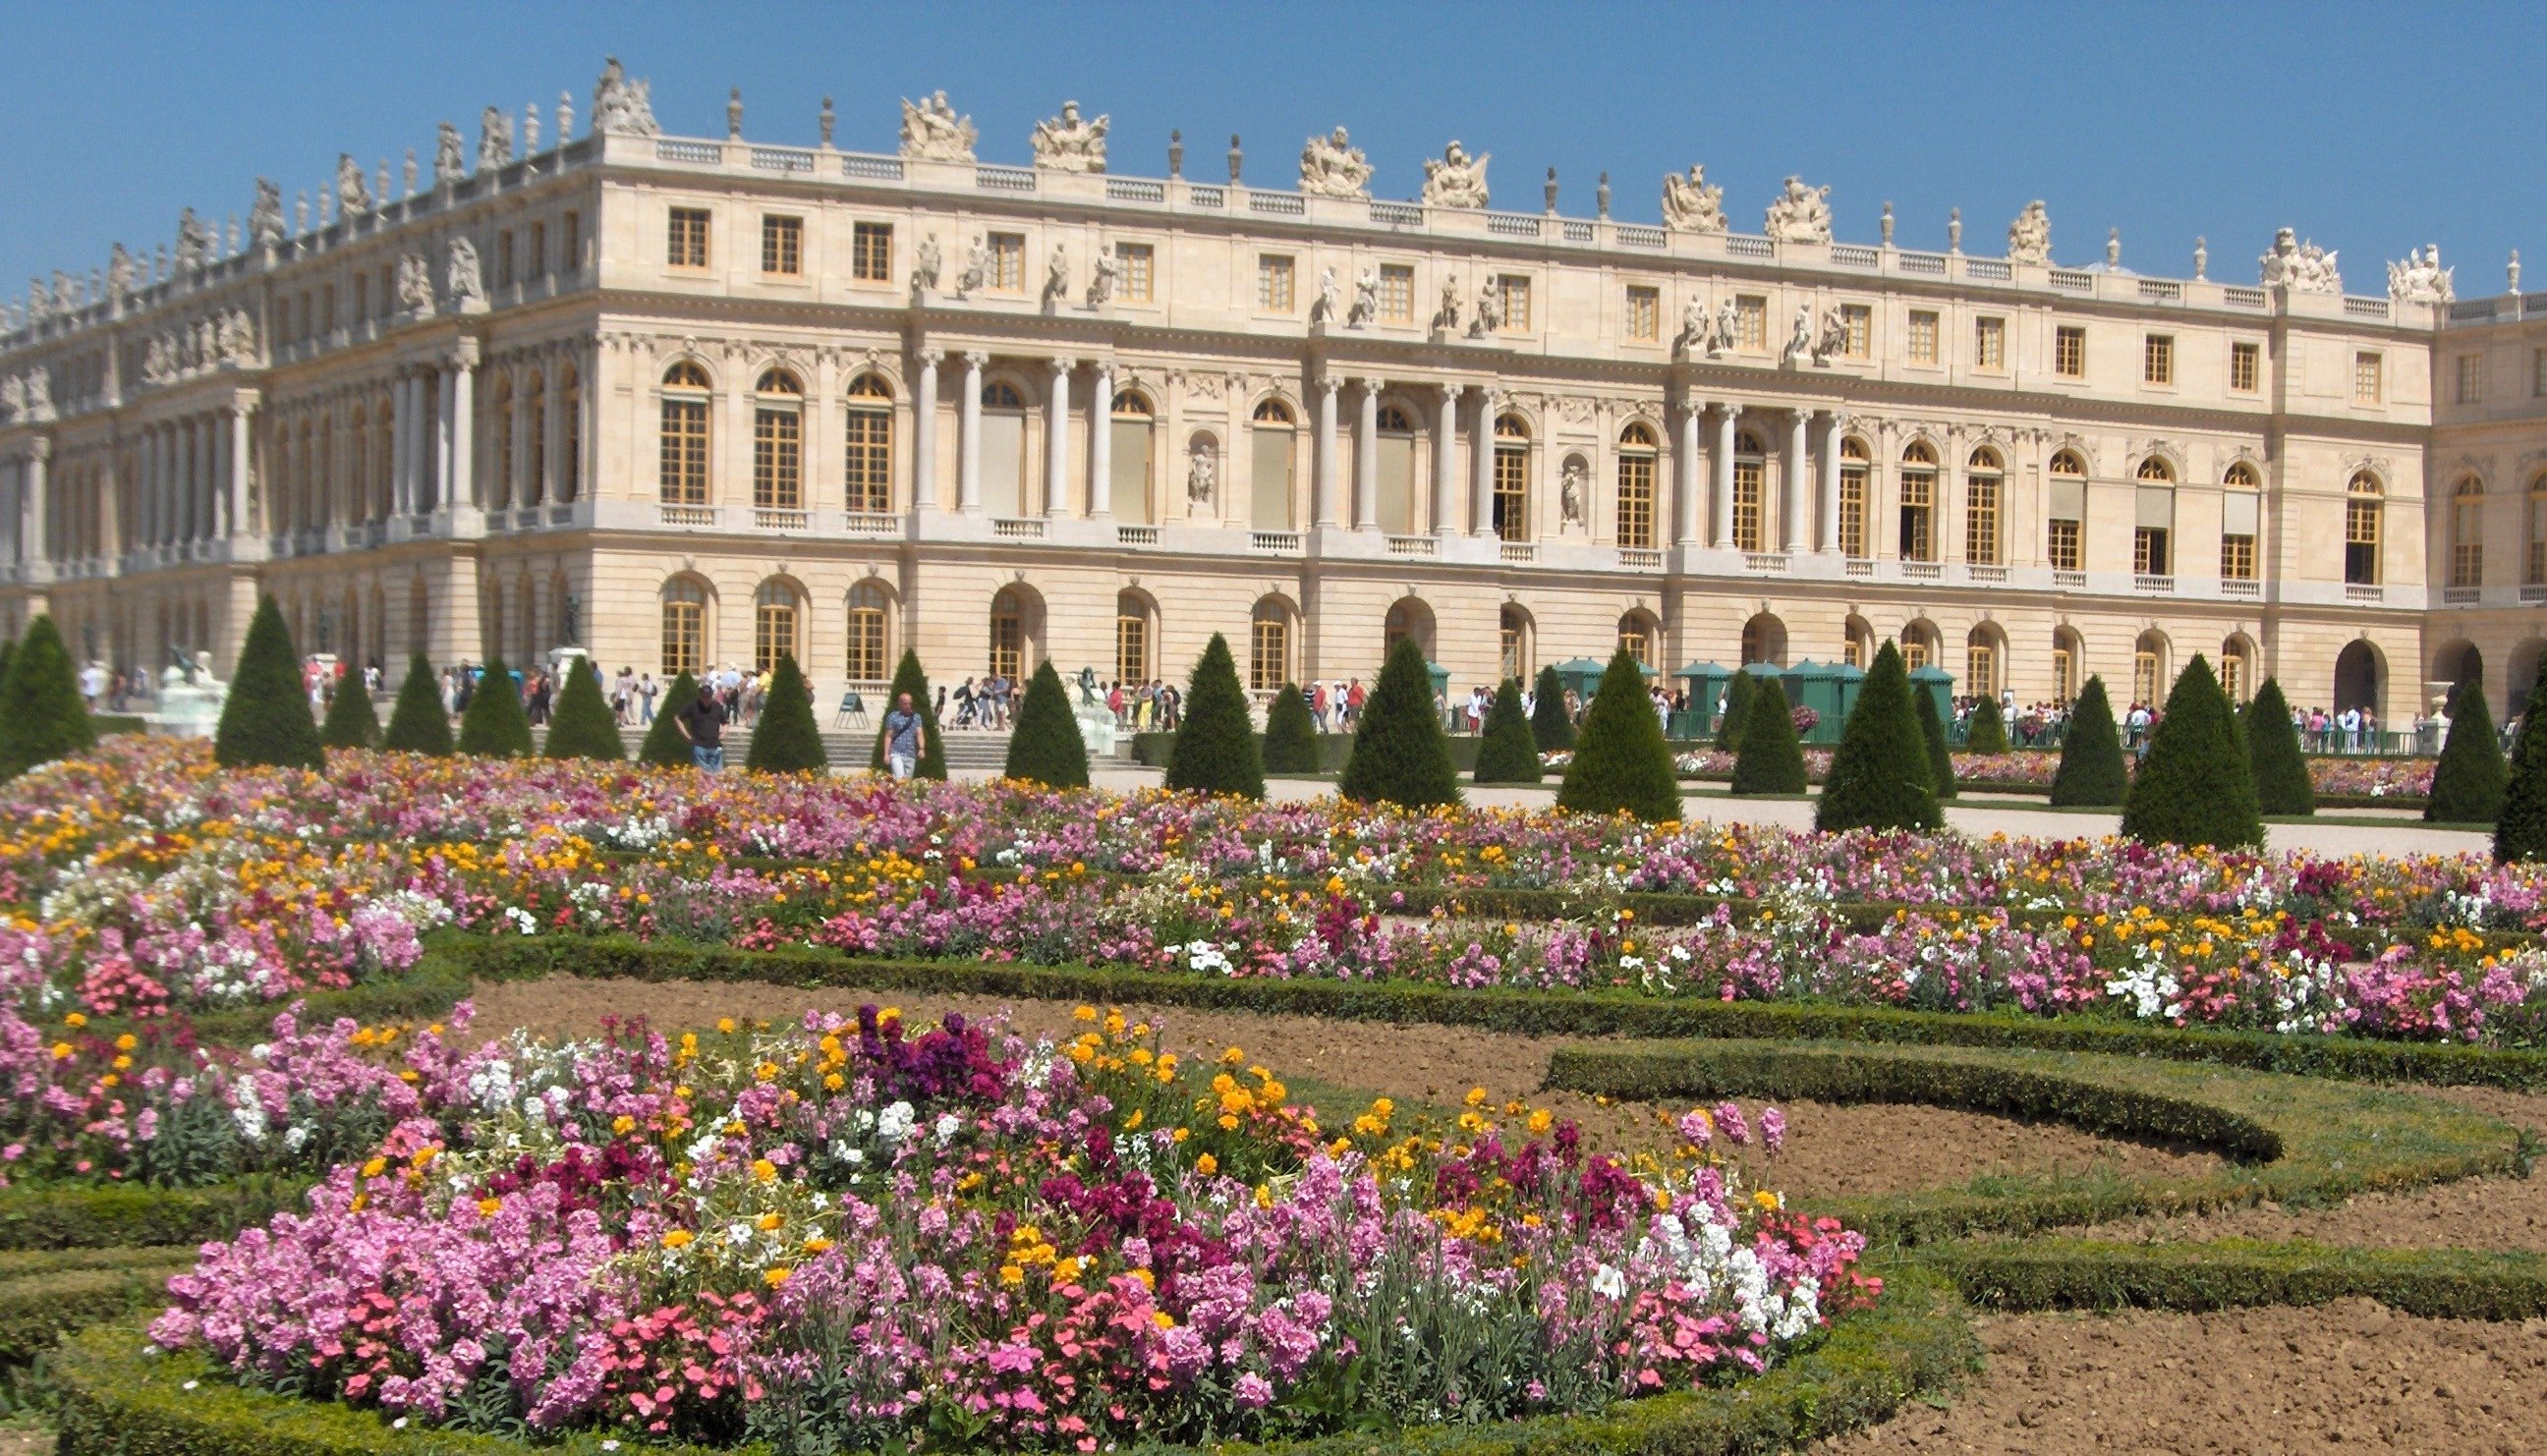 Версаль билеты. Версальский дворец дворцы Франции. Дворец Версаль версальный парк. Замок Версаль (Chateau de Versailles). Мраморный двор Версальского дворца.